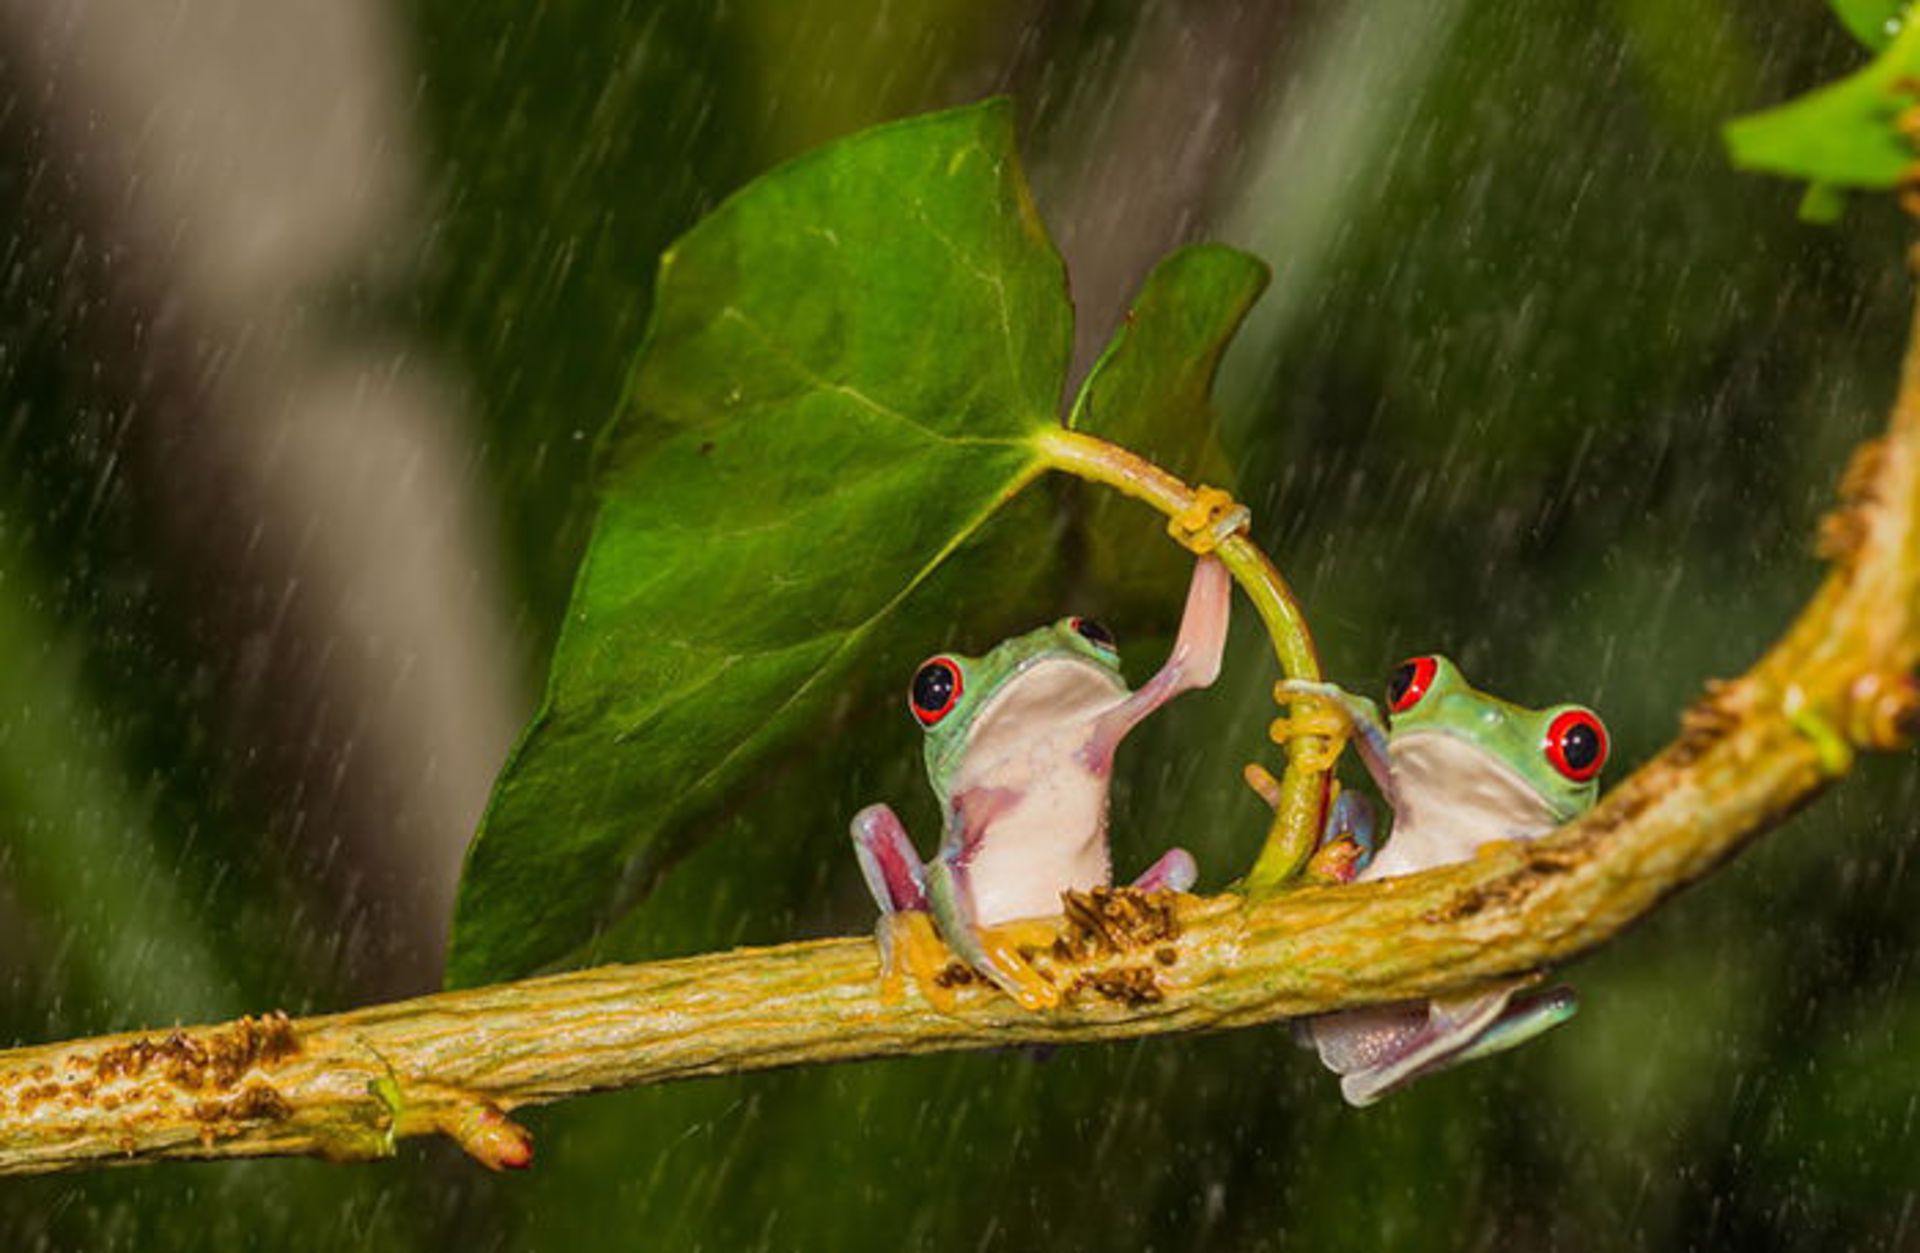 جانوران و چتری از جنس طببیعت